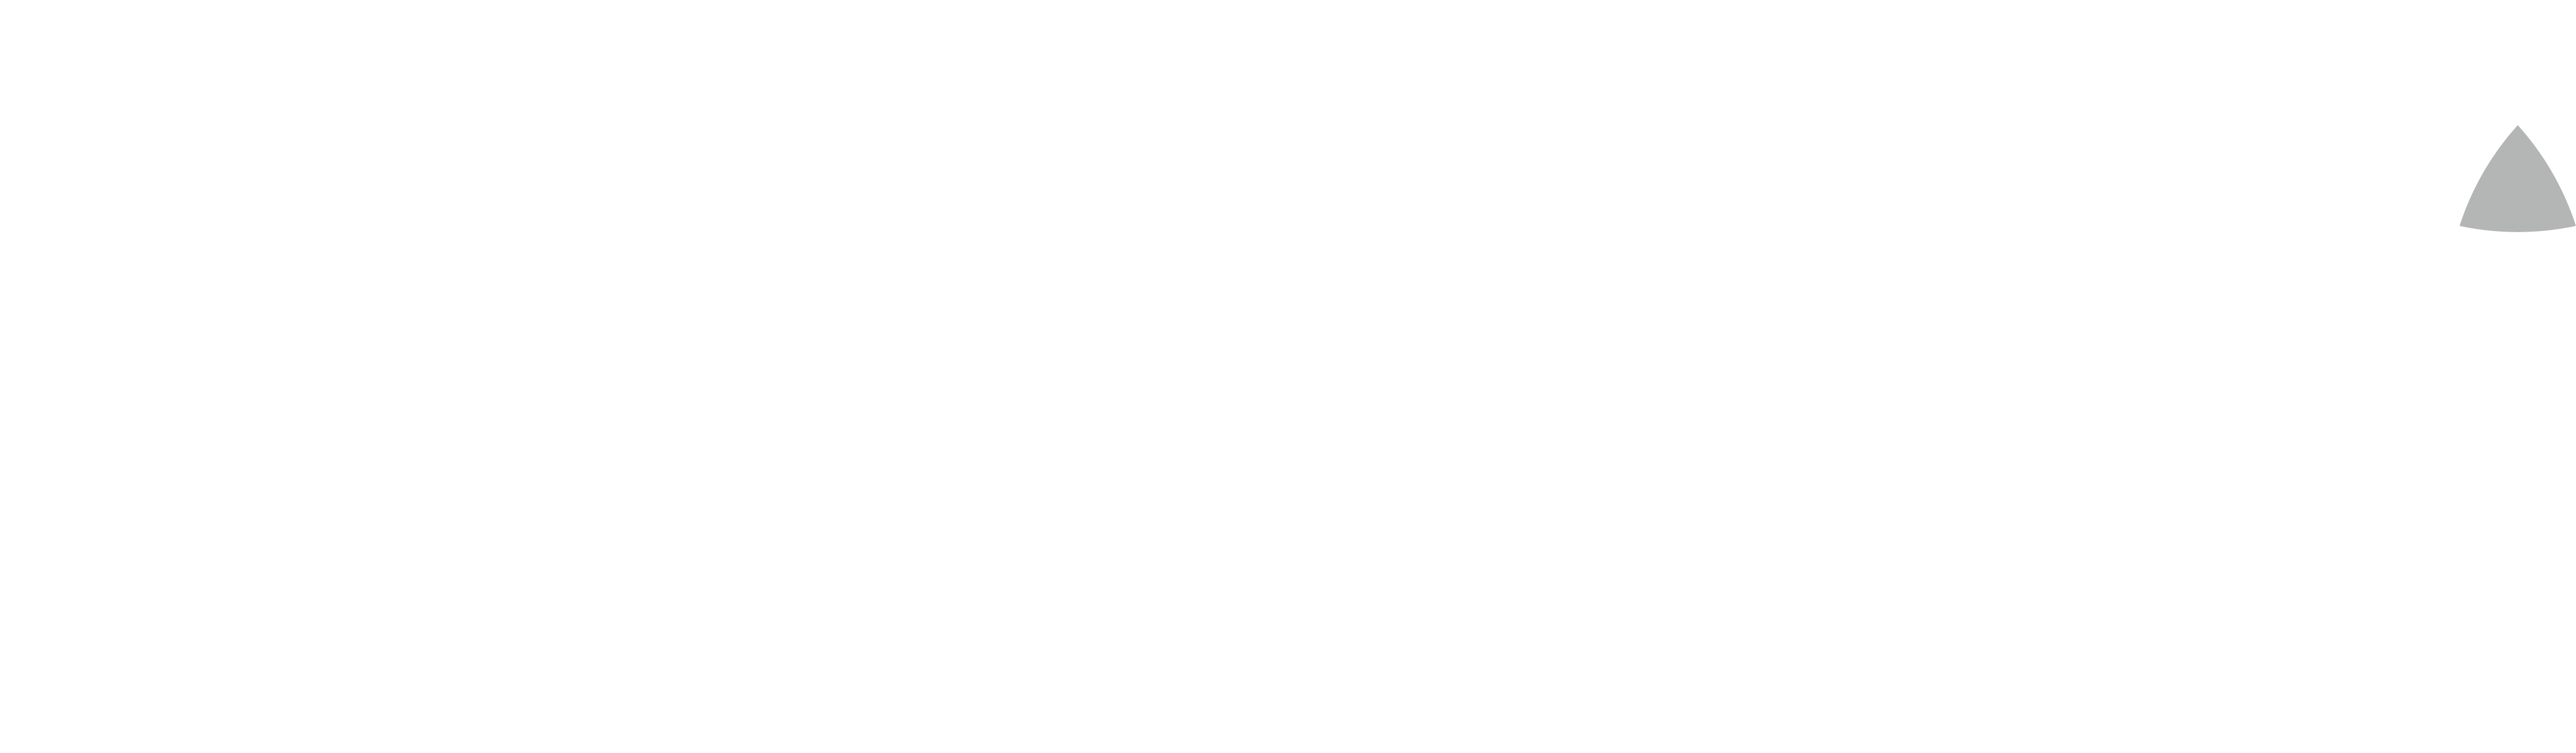 keego-logo-white